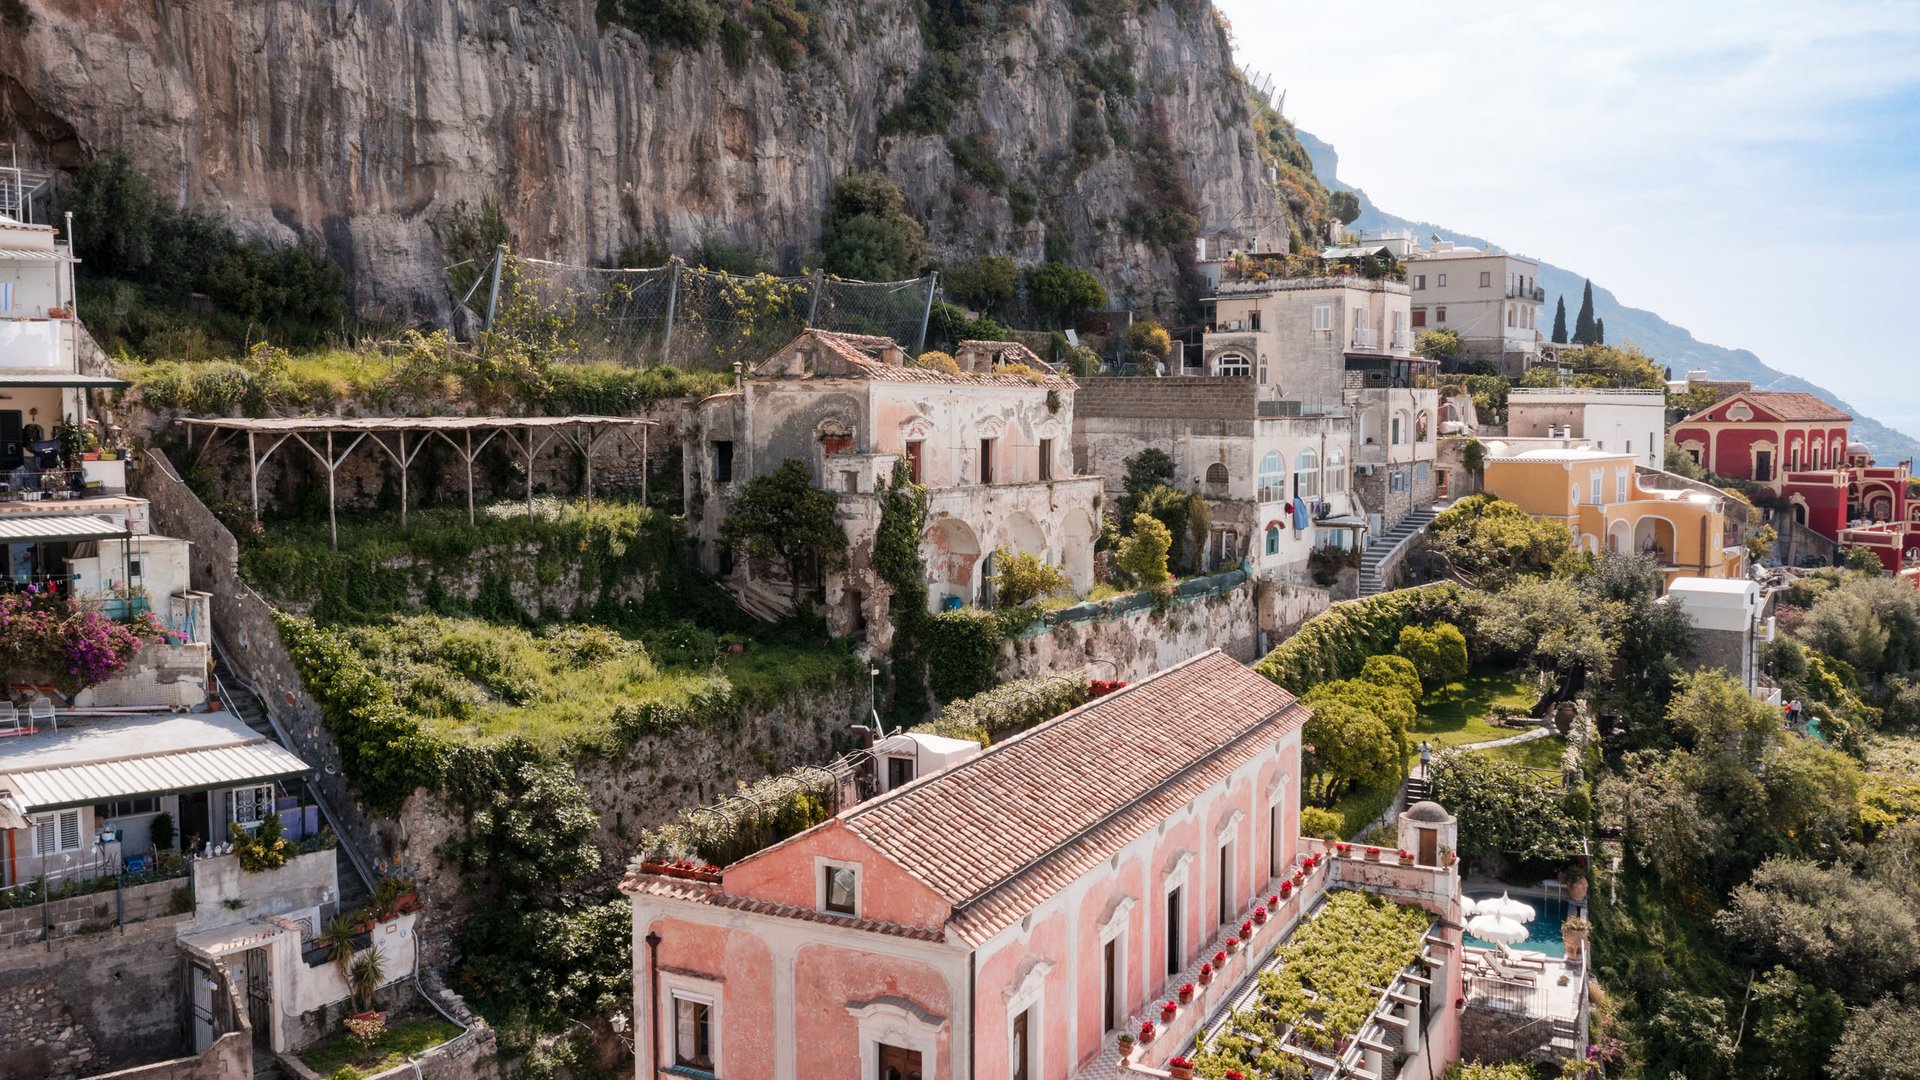 The Amalfi Coast and its treasures